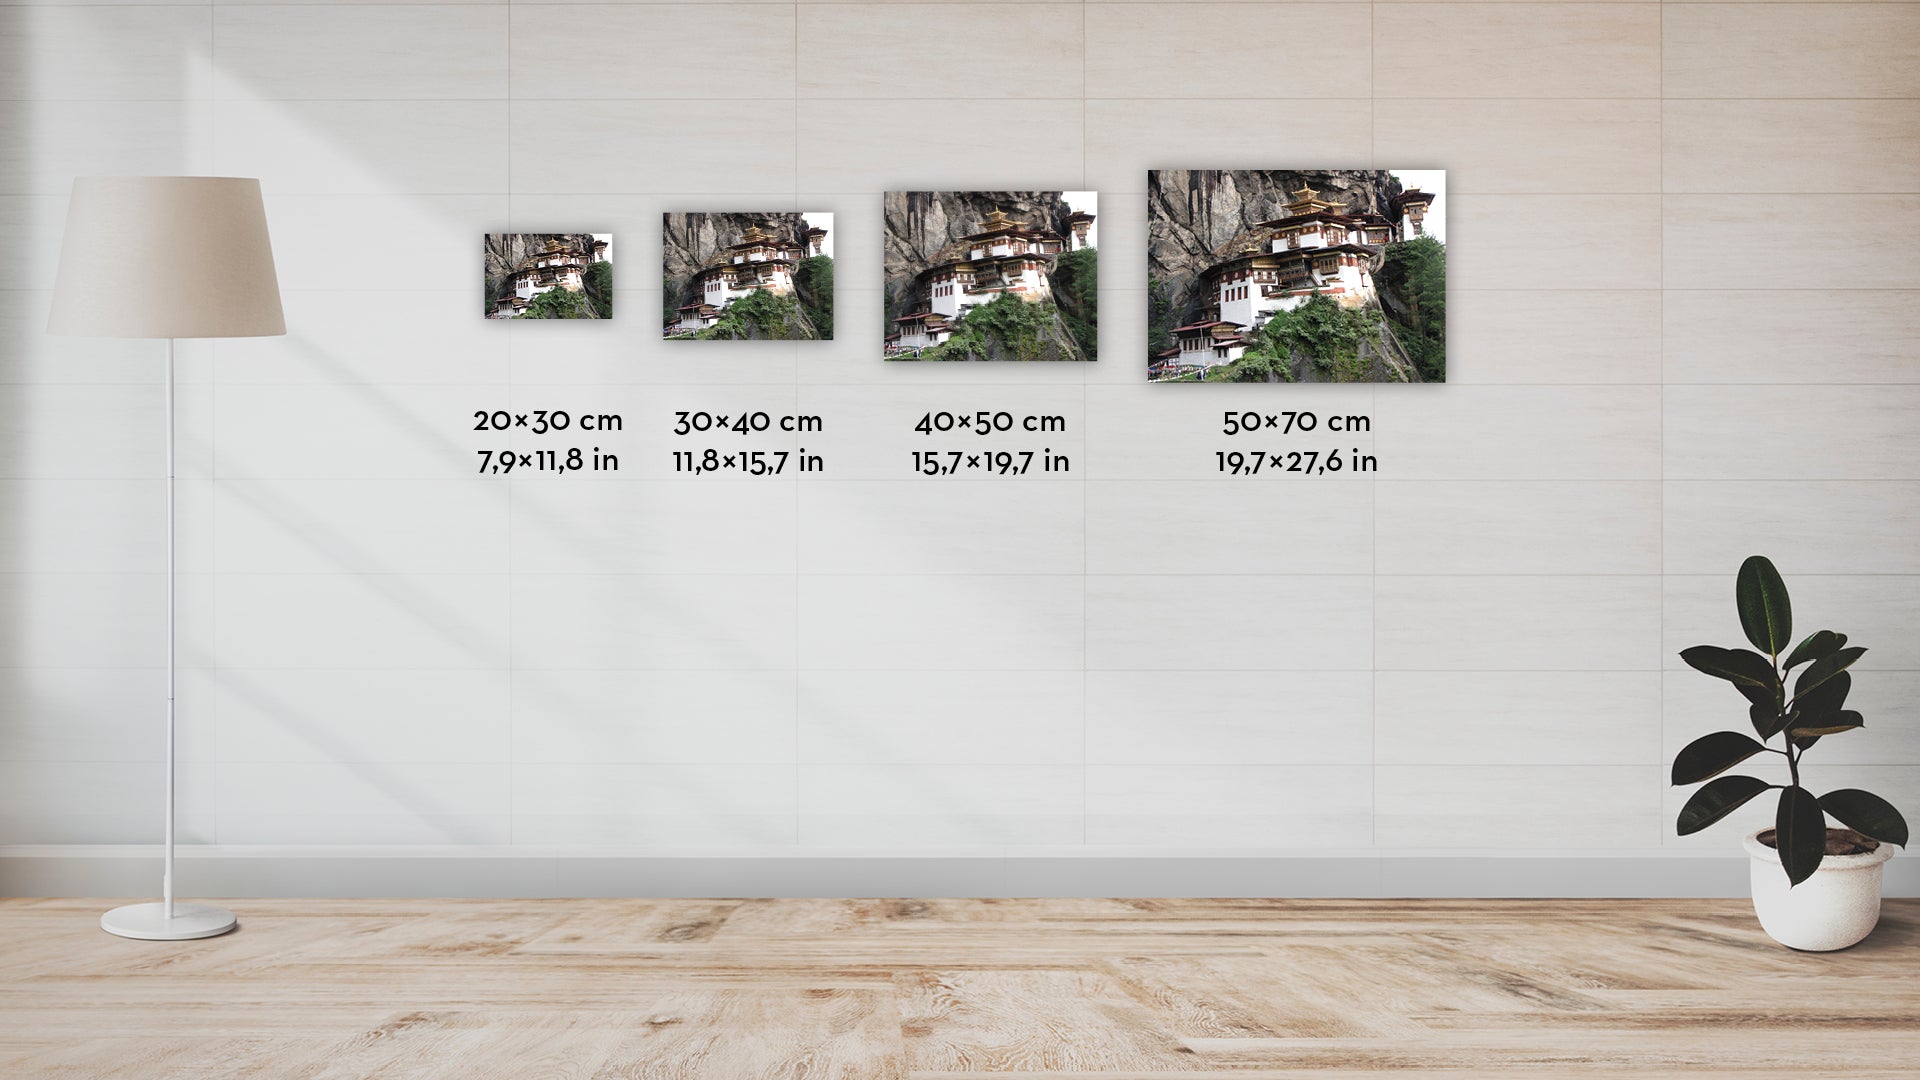 Tigrisfészek Kolostor III. - limitált szériás fotográfia különböző méretben és kivitelben - InspiredByBhutan